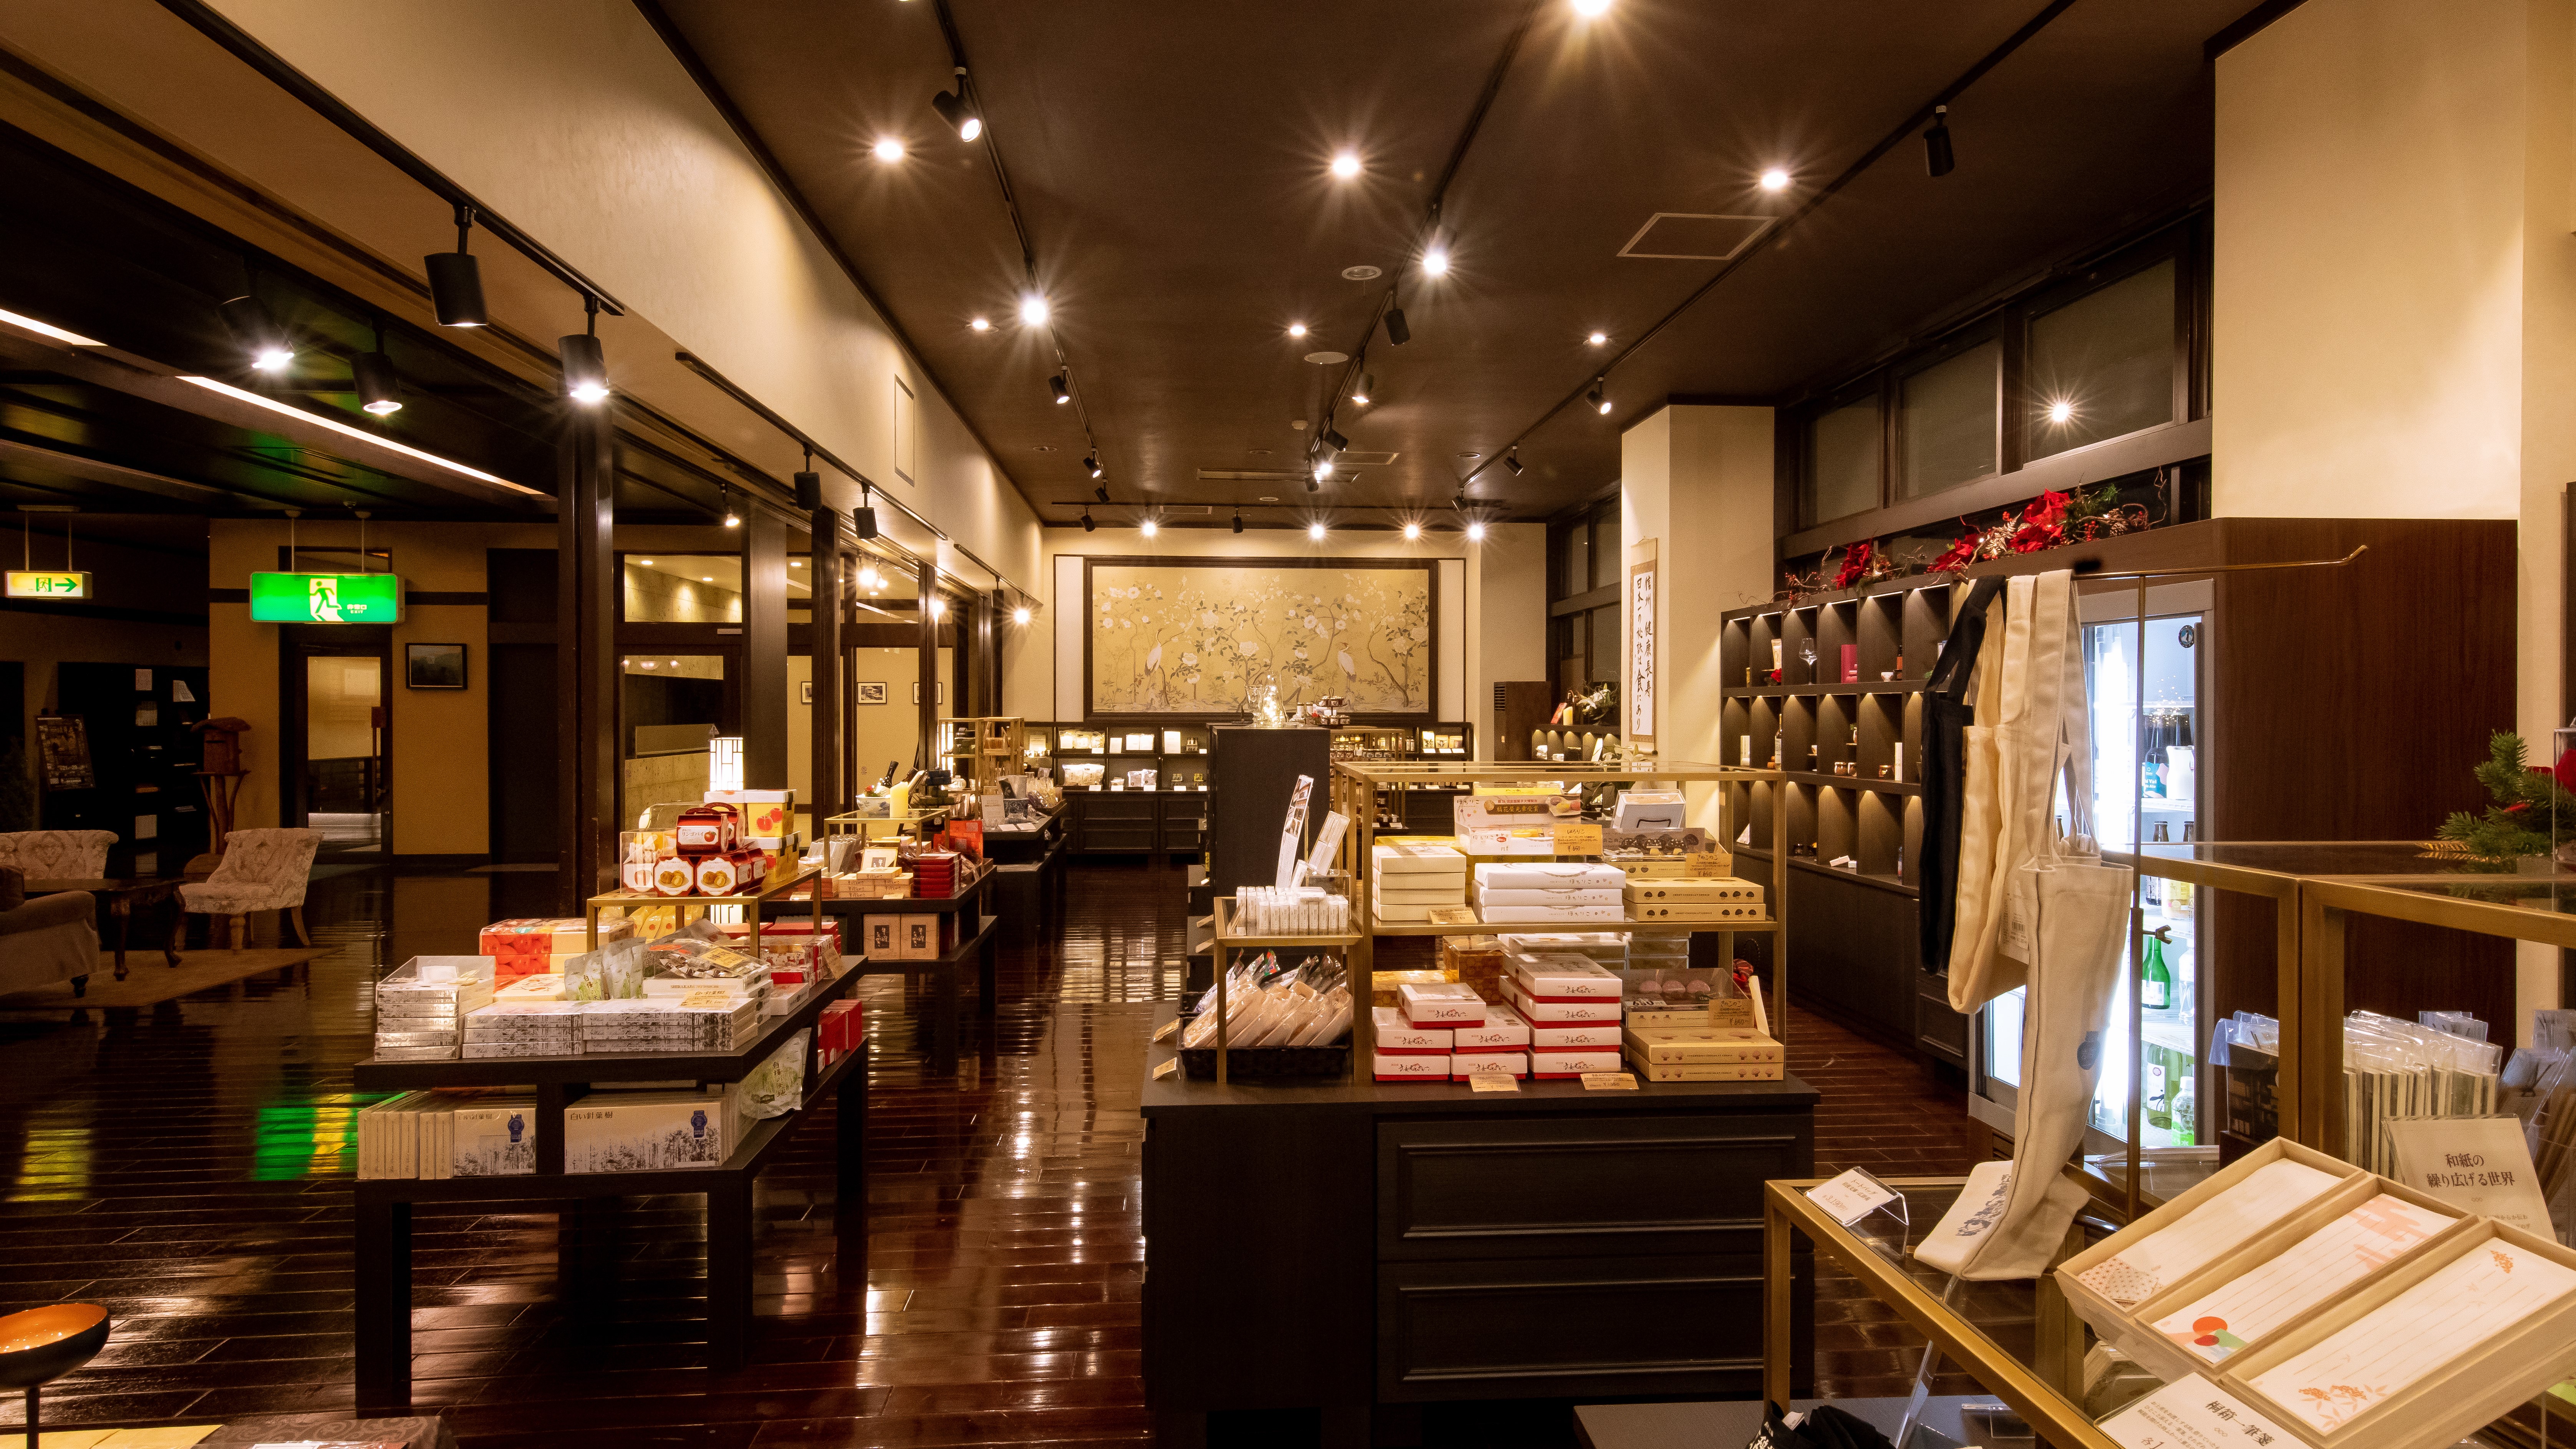 売店◆当館オリジナルのお土産から長野県の名産品まで取り揃えております